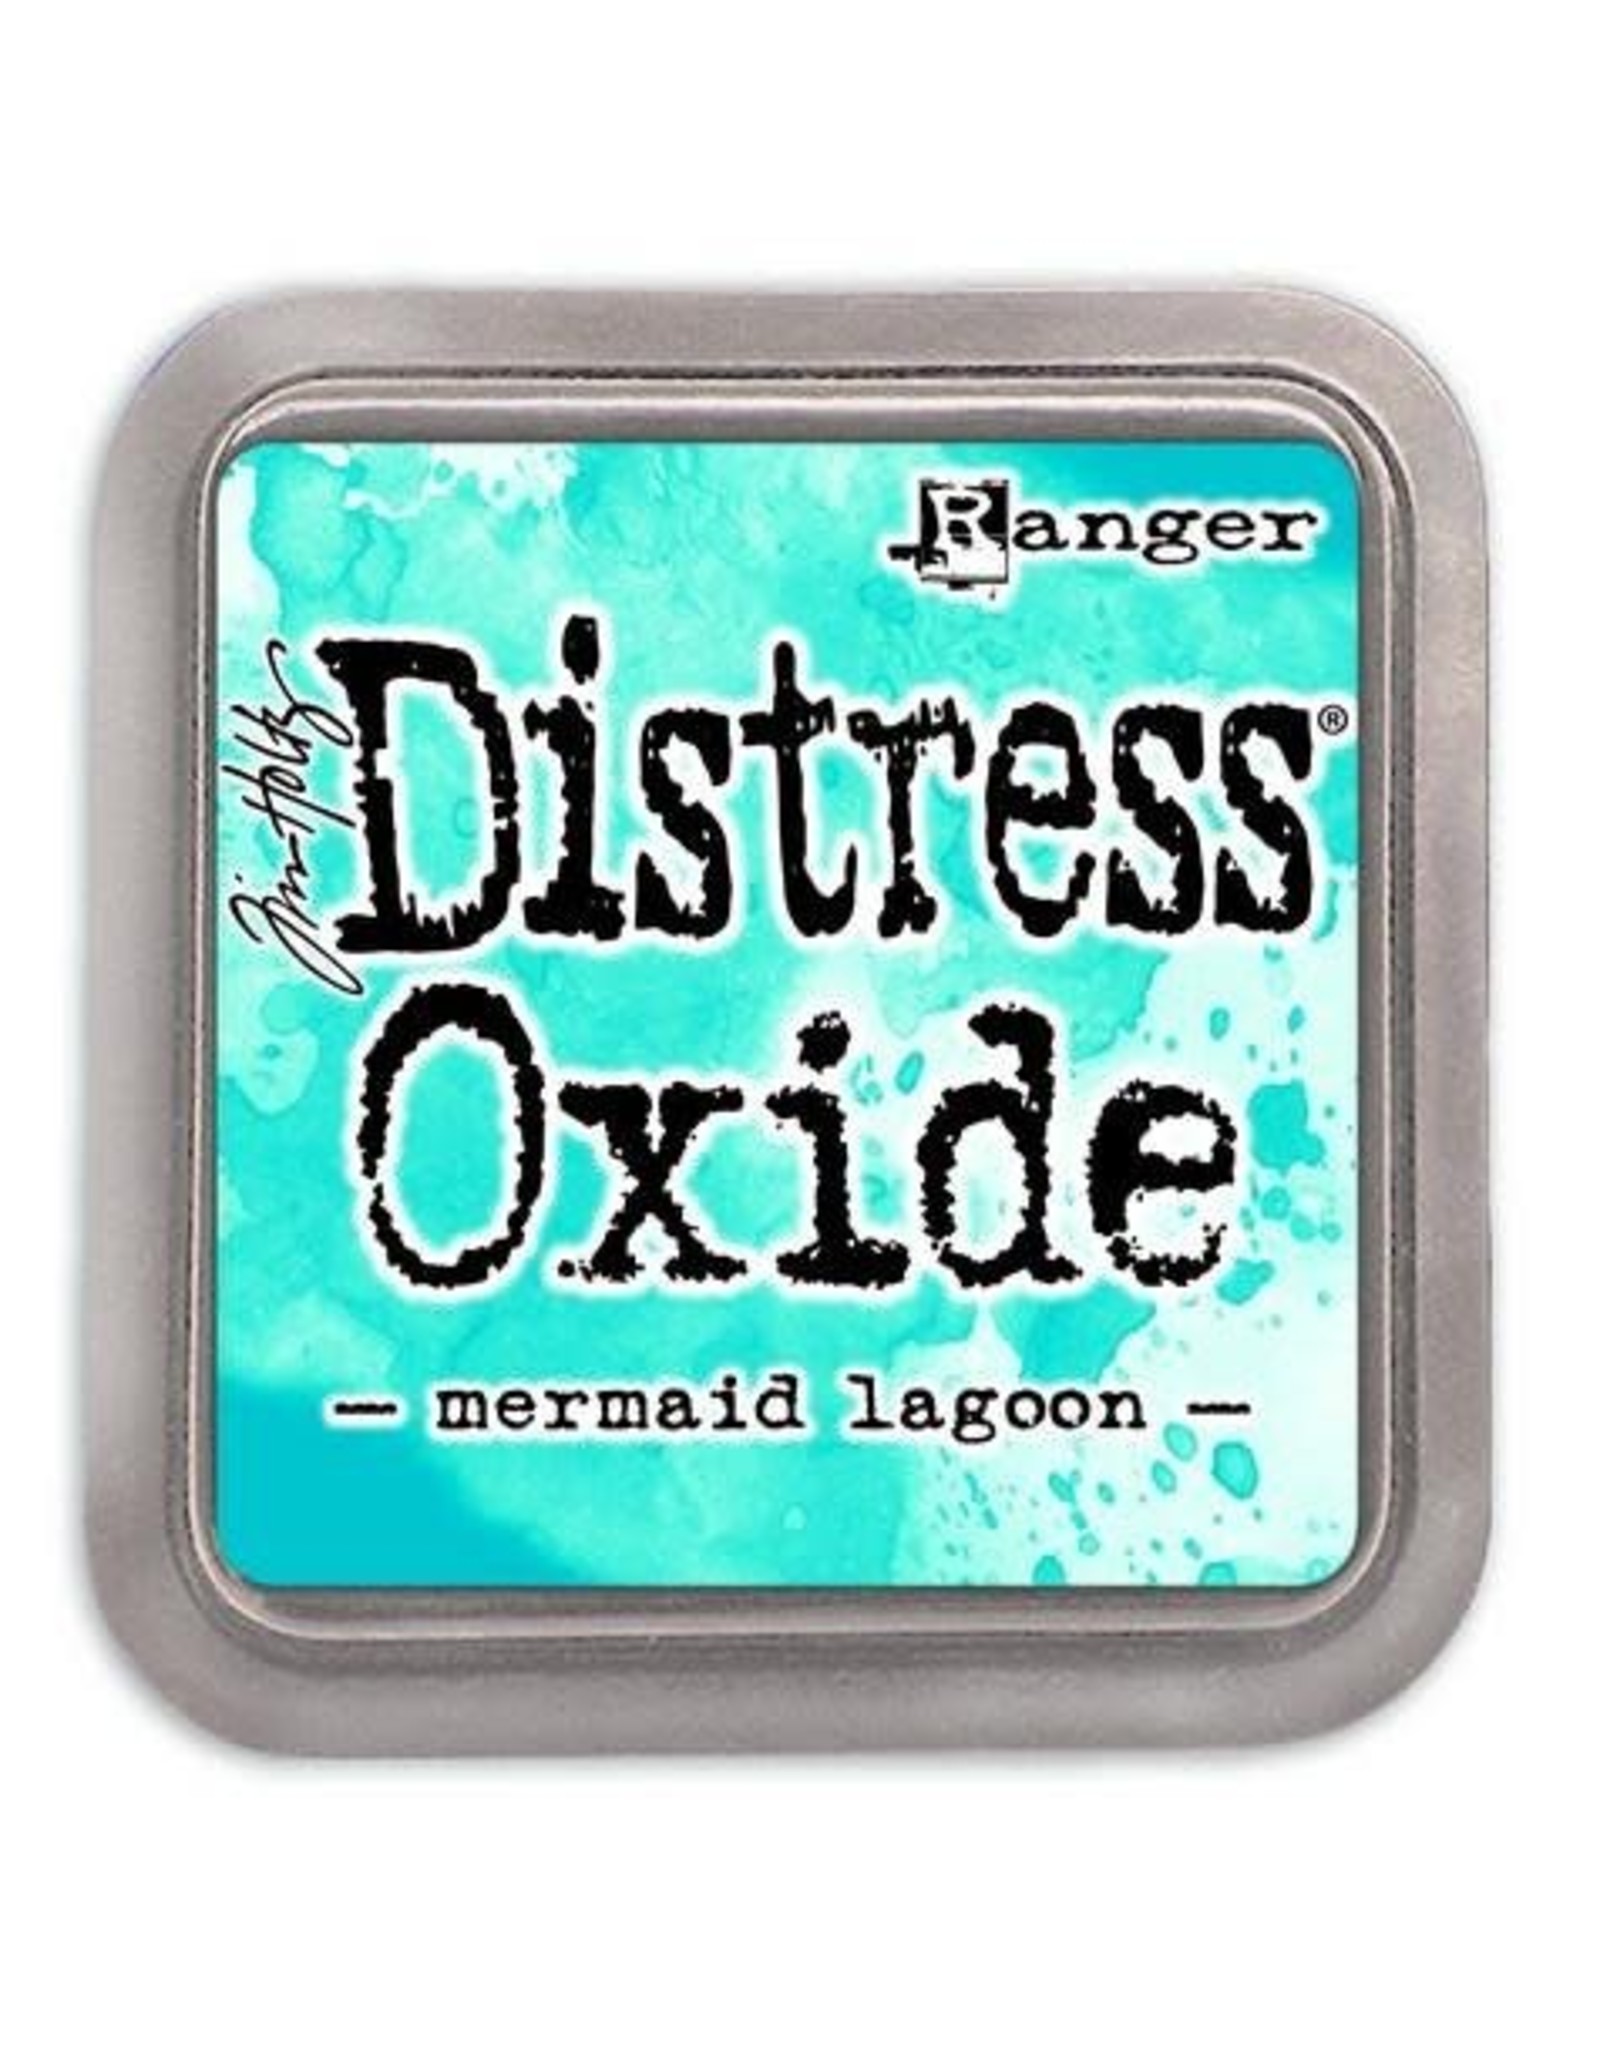 Ranger Distress Oxide Ranger Distress Oxide - mermaid lagoon